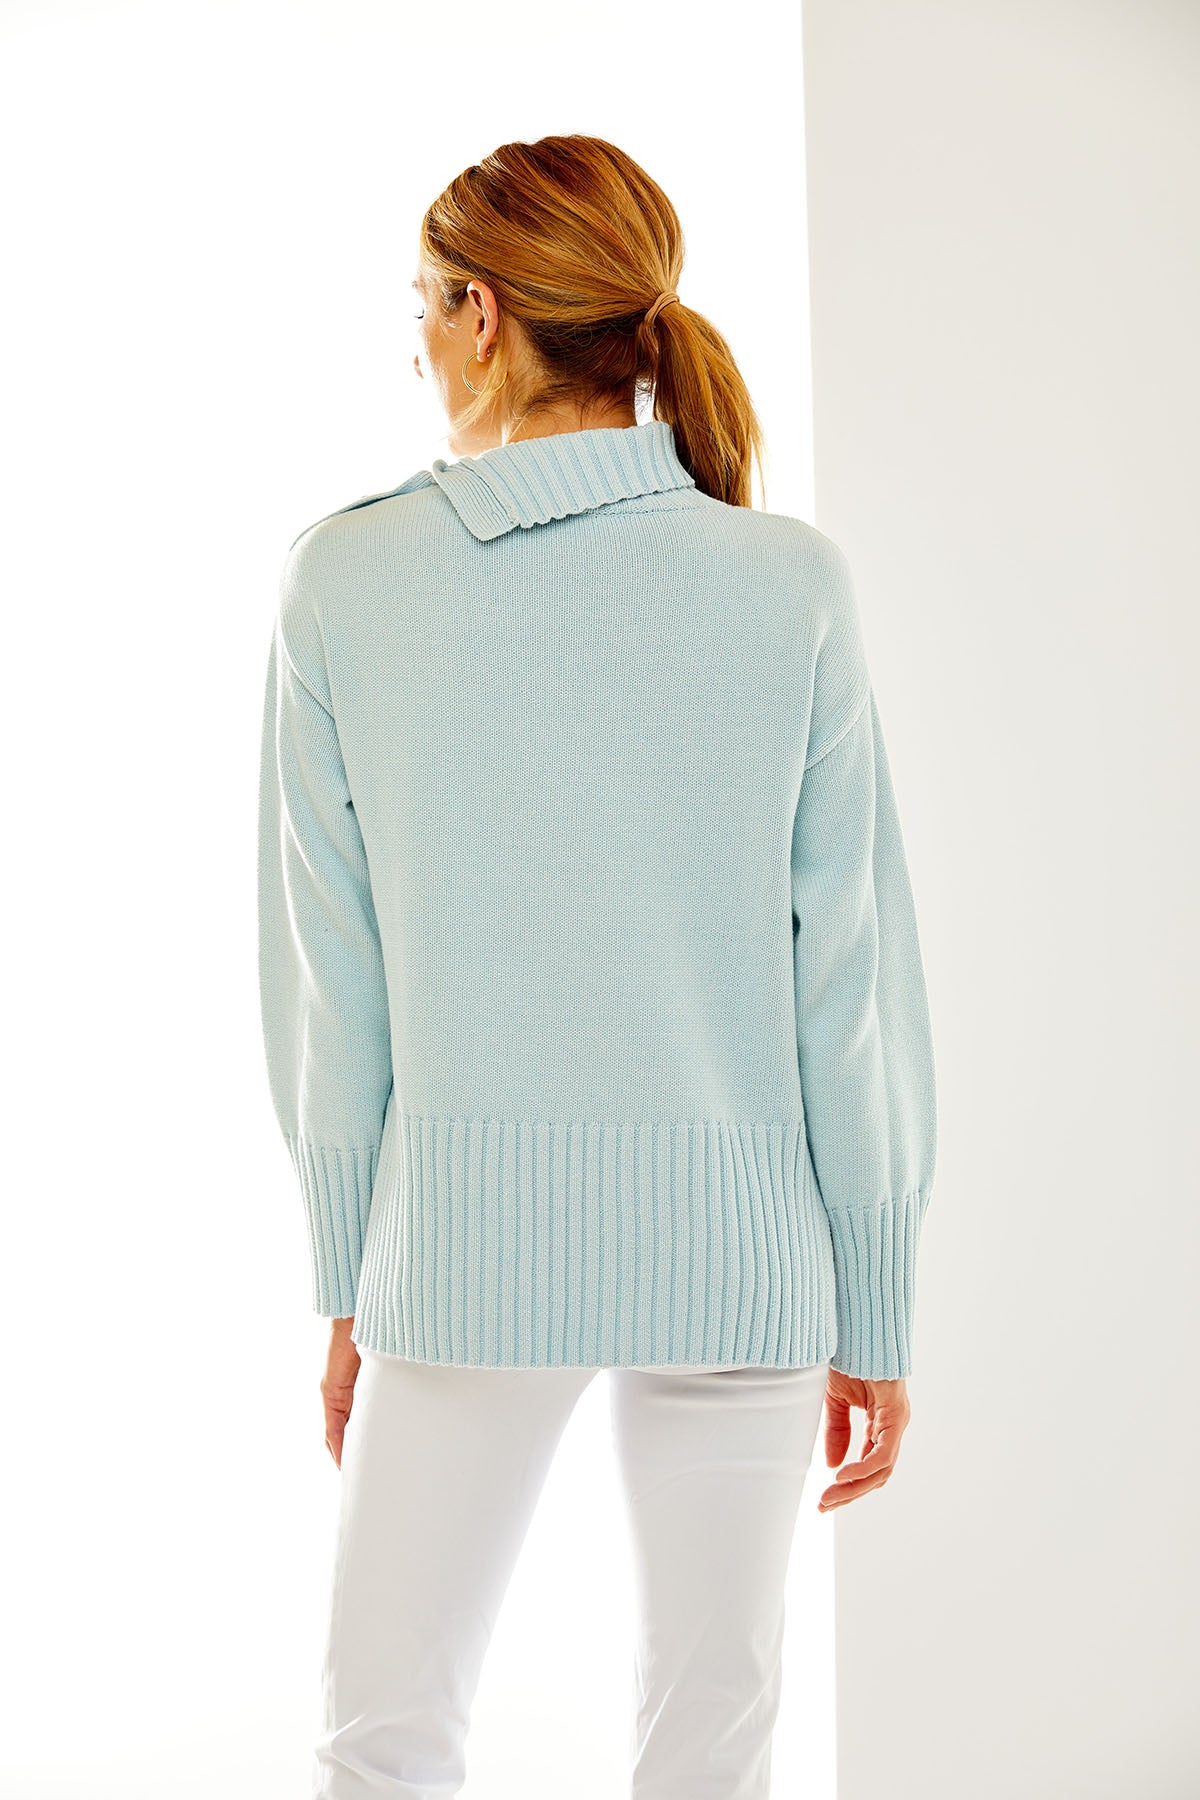 Woman in light blue sweater